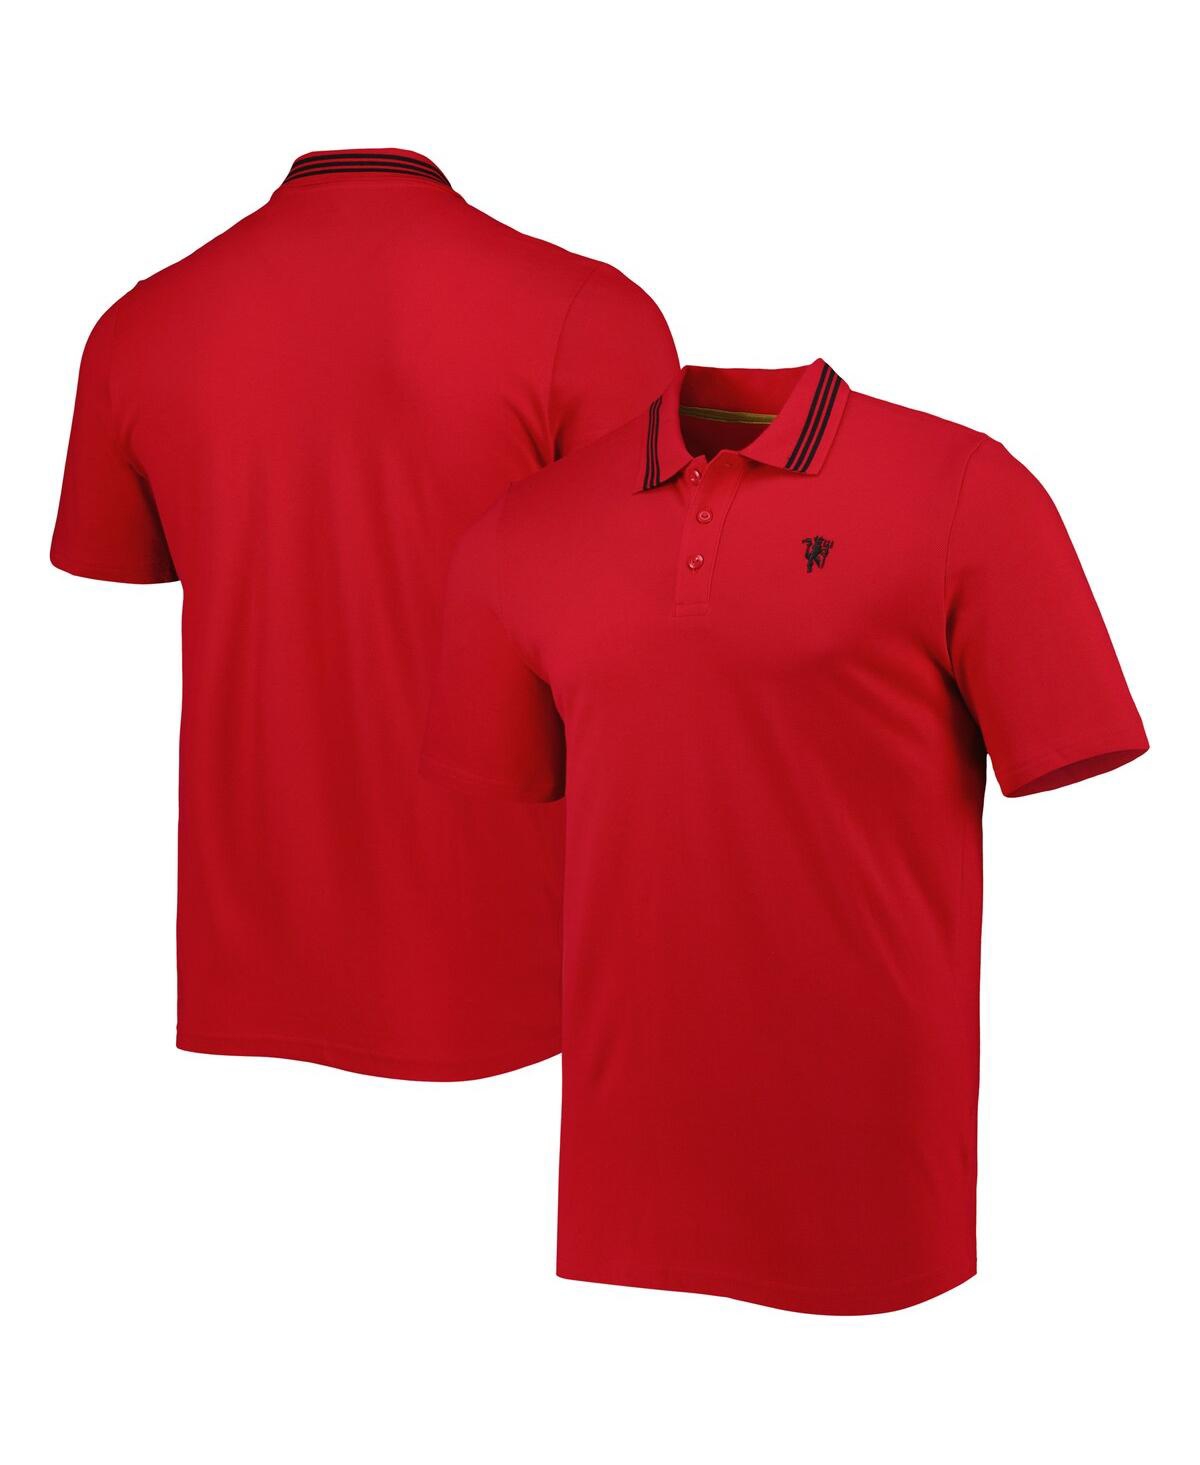 Shop Adidas Originals Men's Adidas Red Manchester United Club Polo Shirt